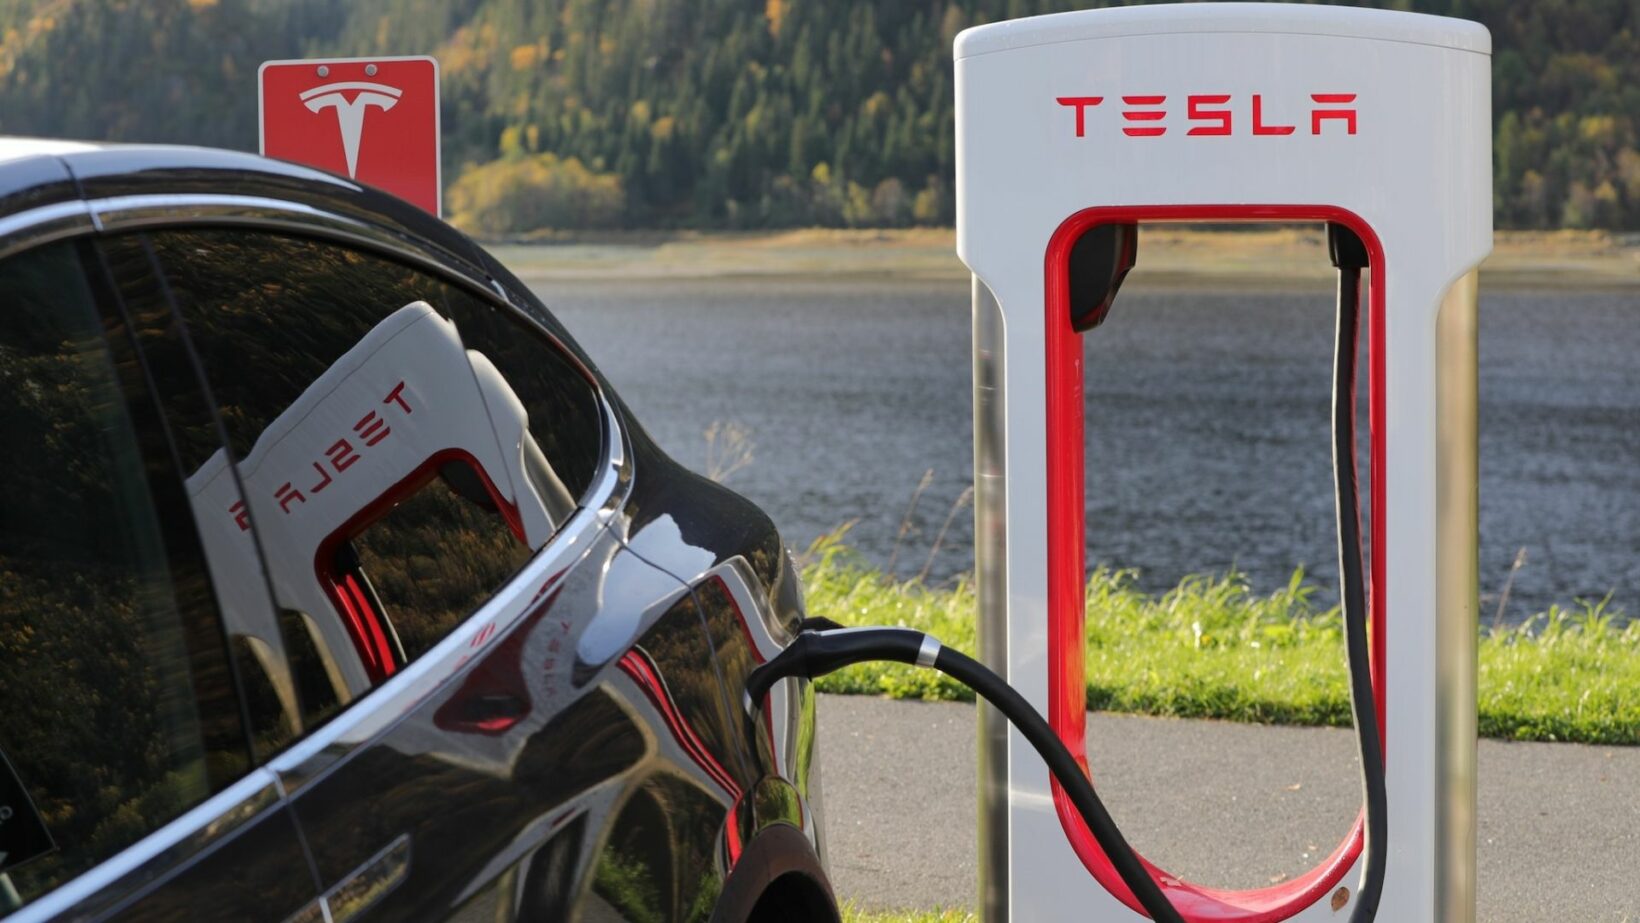 En 2012, Tesla a déployé son réseau de Superchargers, composé de bornes de recharge rapide en courant continu, développées en interne et initialement exclusives à ses clients.